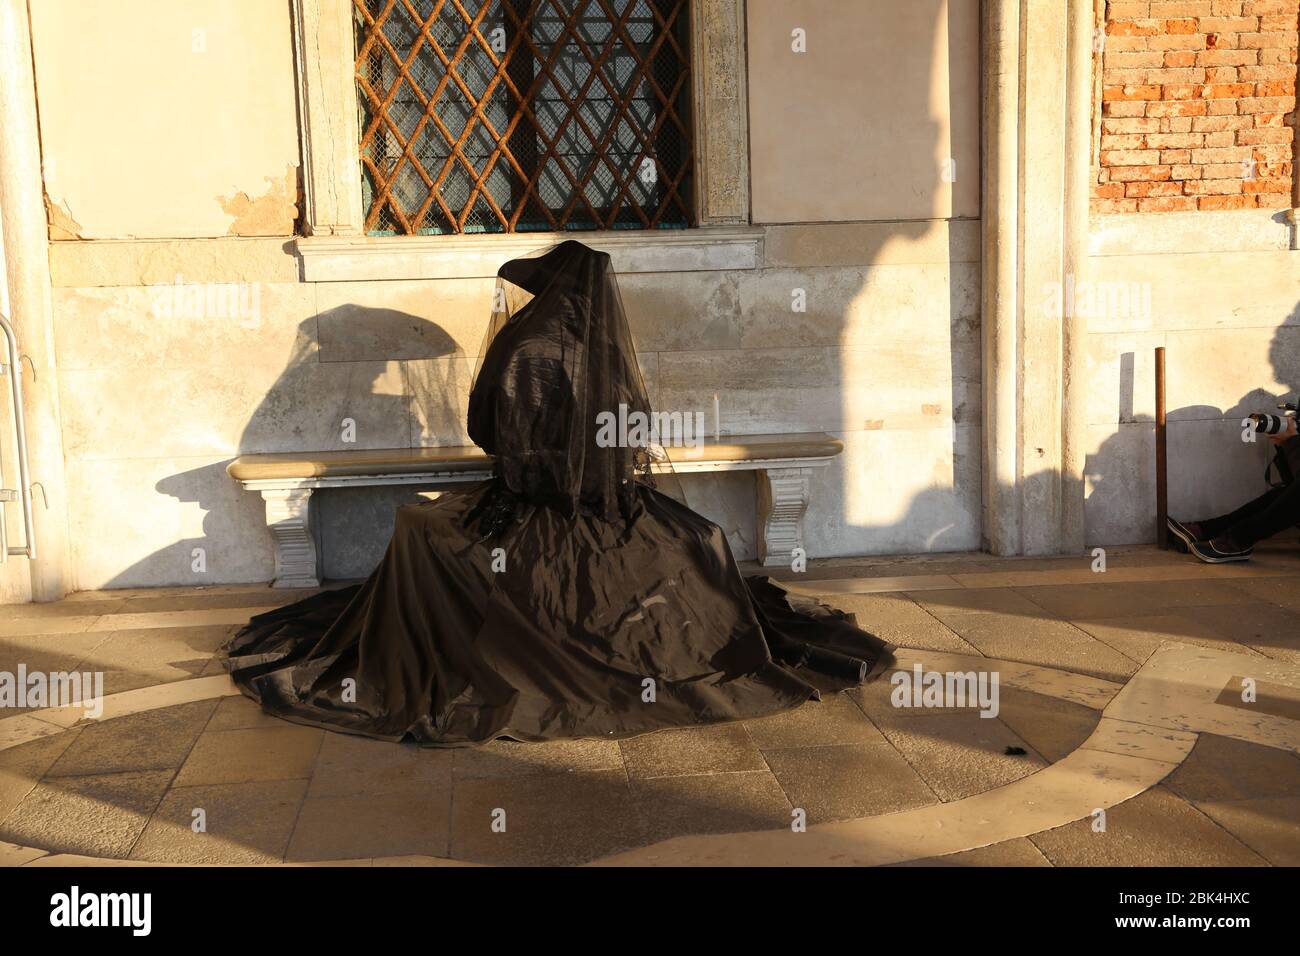 venedig, Italien-februar 21.2020: Der Karneval in Venedig war sehr schön mit Schaufensterpuppen, die bei Sonnenaufgang mit bunten Jeans posierten, kurz vor der Corona pande Stockfoto